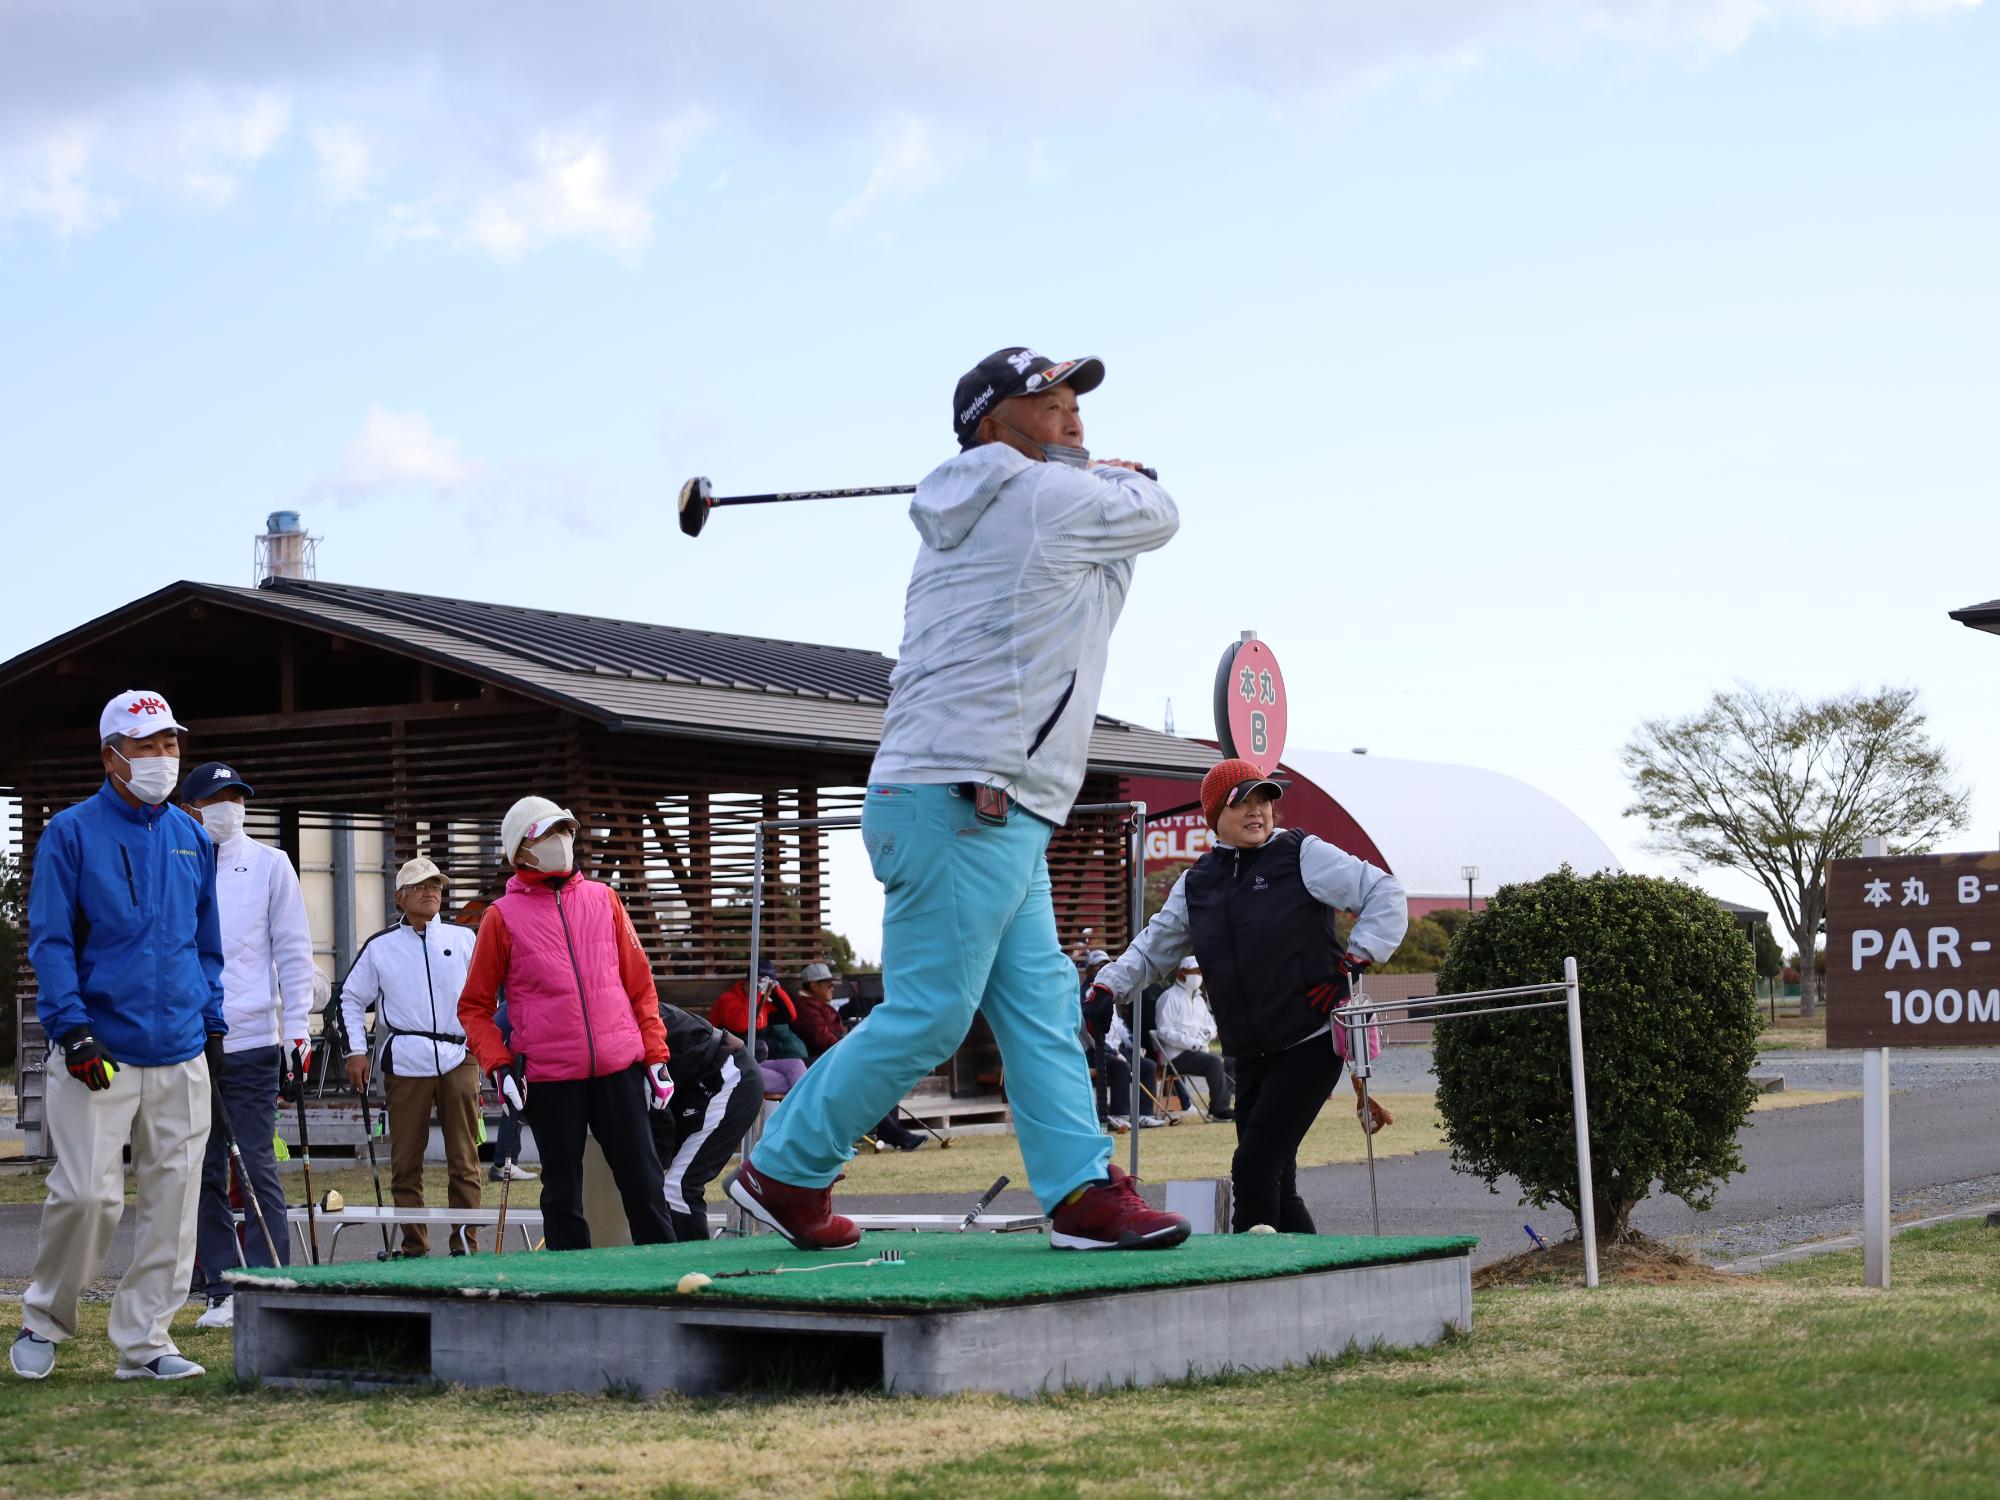 相馬光陽パークゴルフ場で開催された大会で第一打を放つ出場者の様子